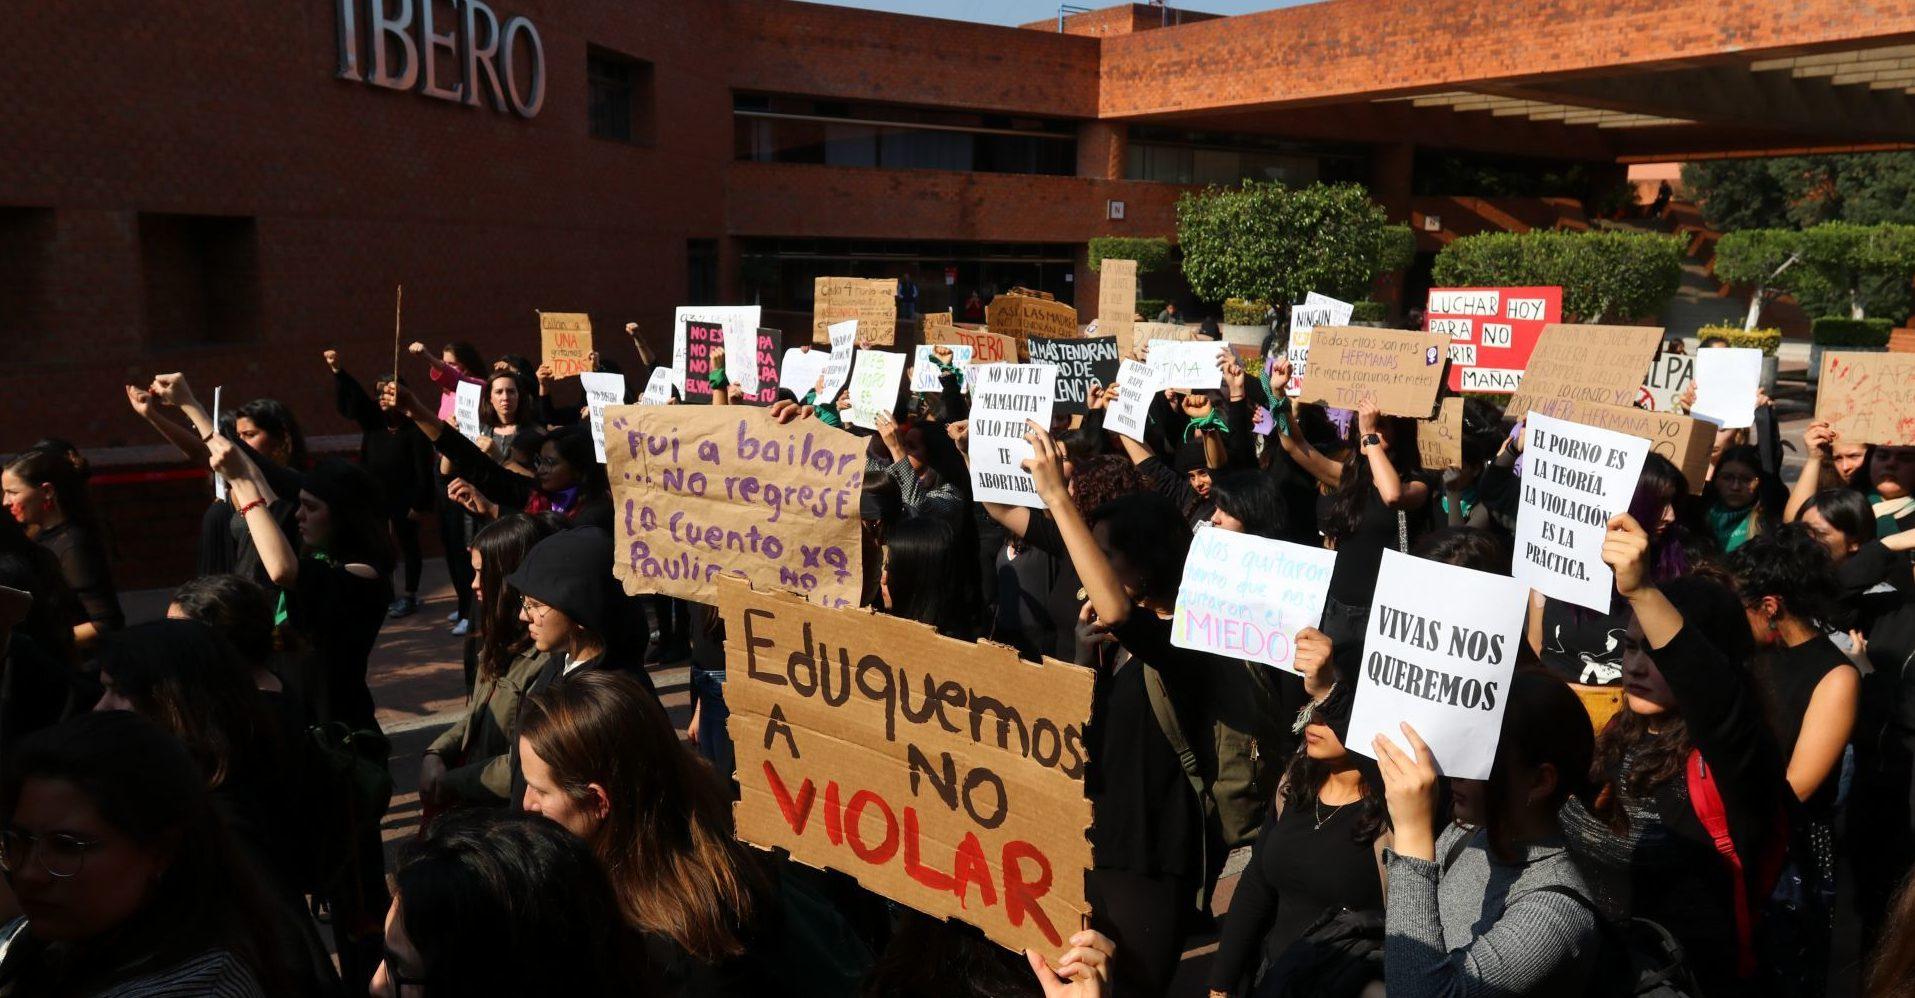 Ibero investigará de oficio denuncias de acoso sexual expuestas en “tendedero”